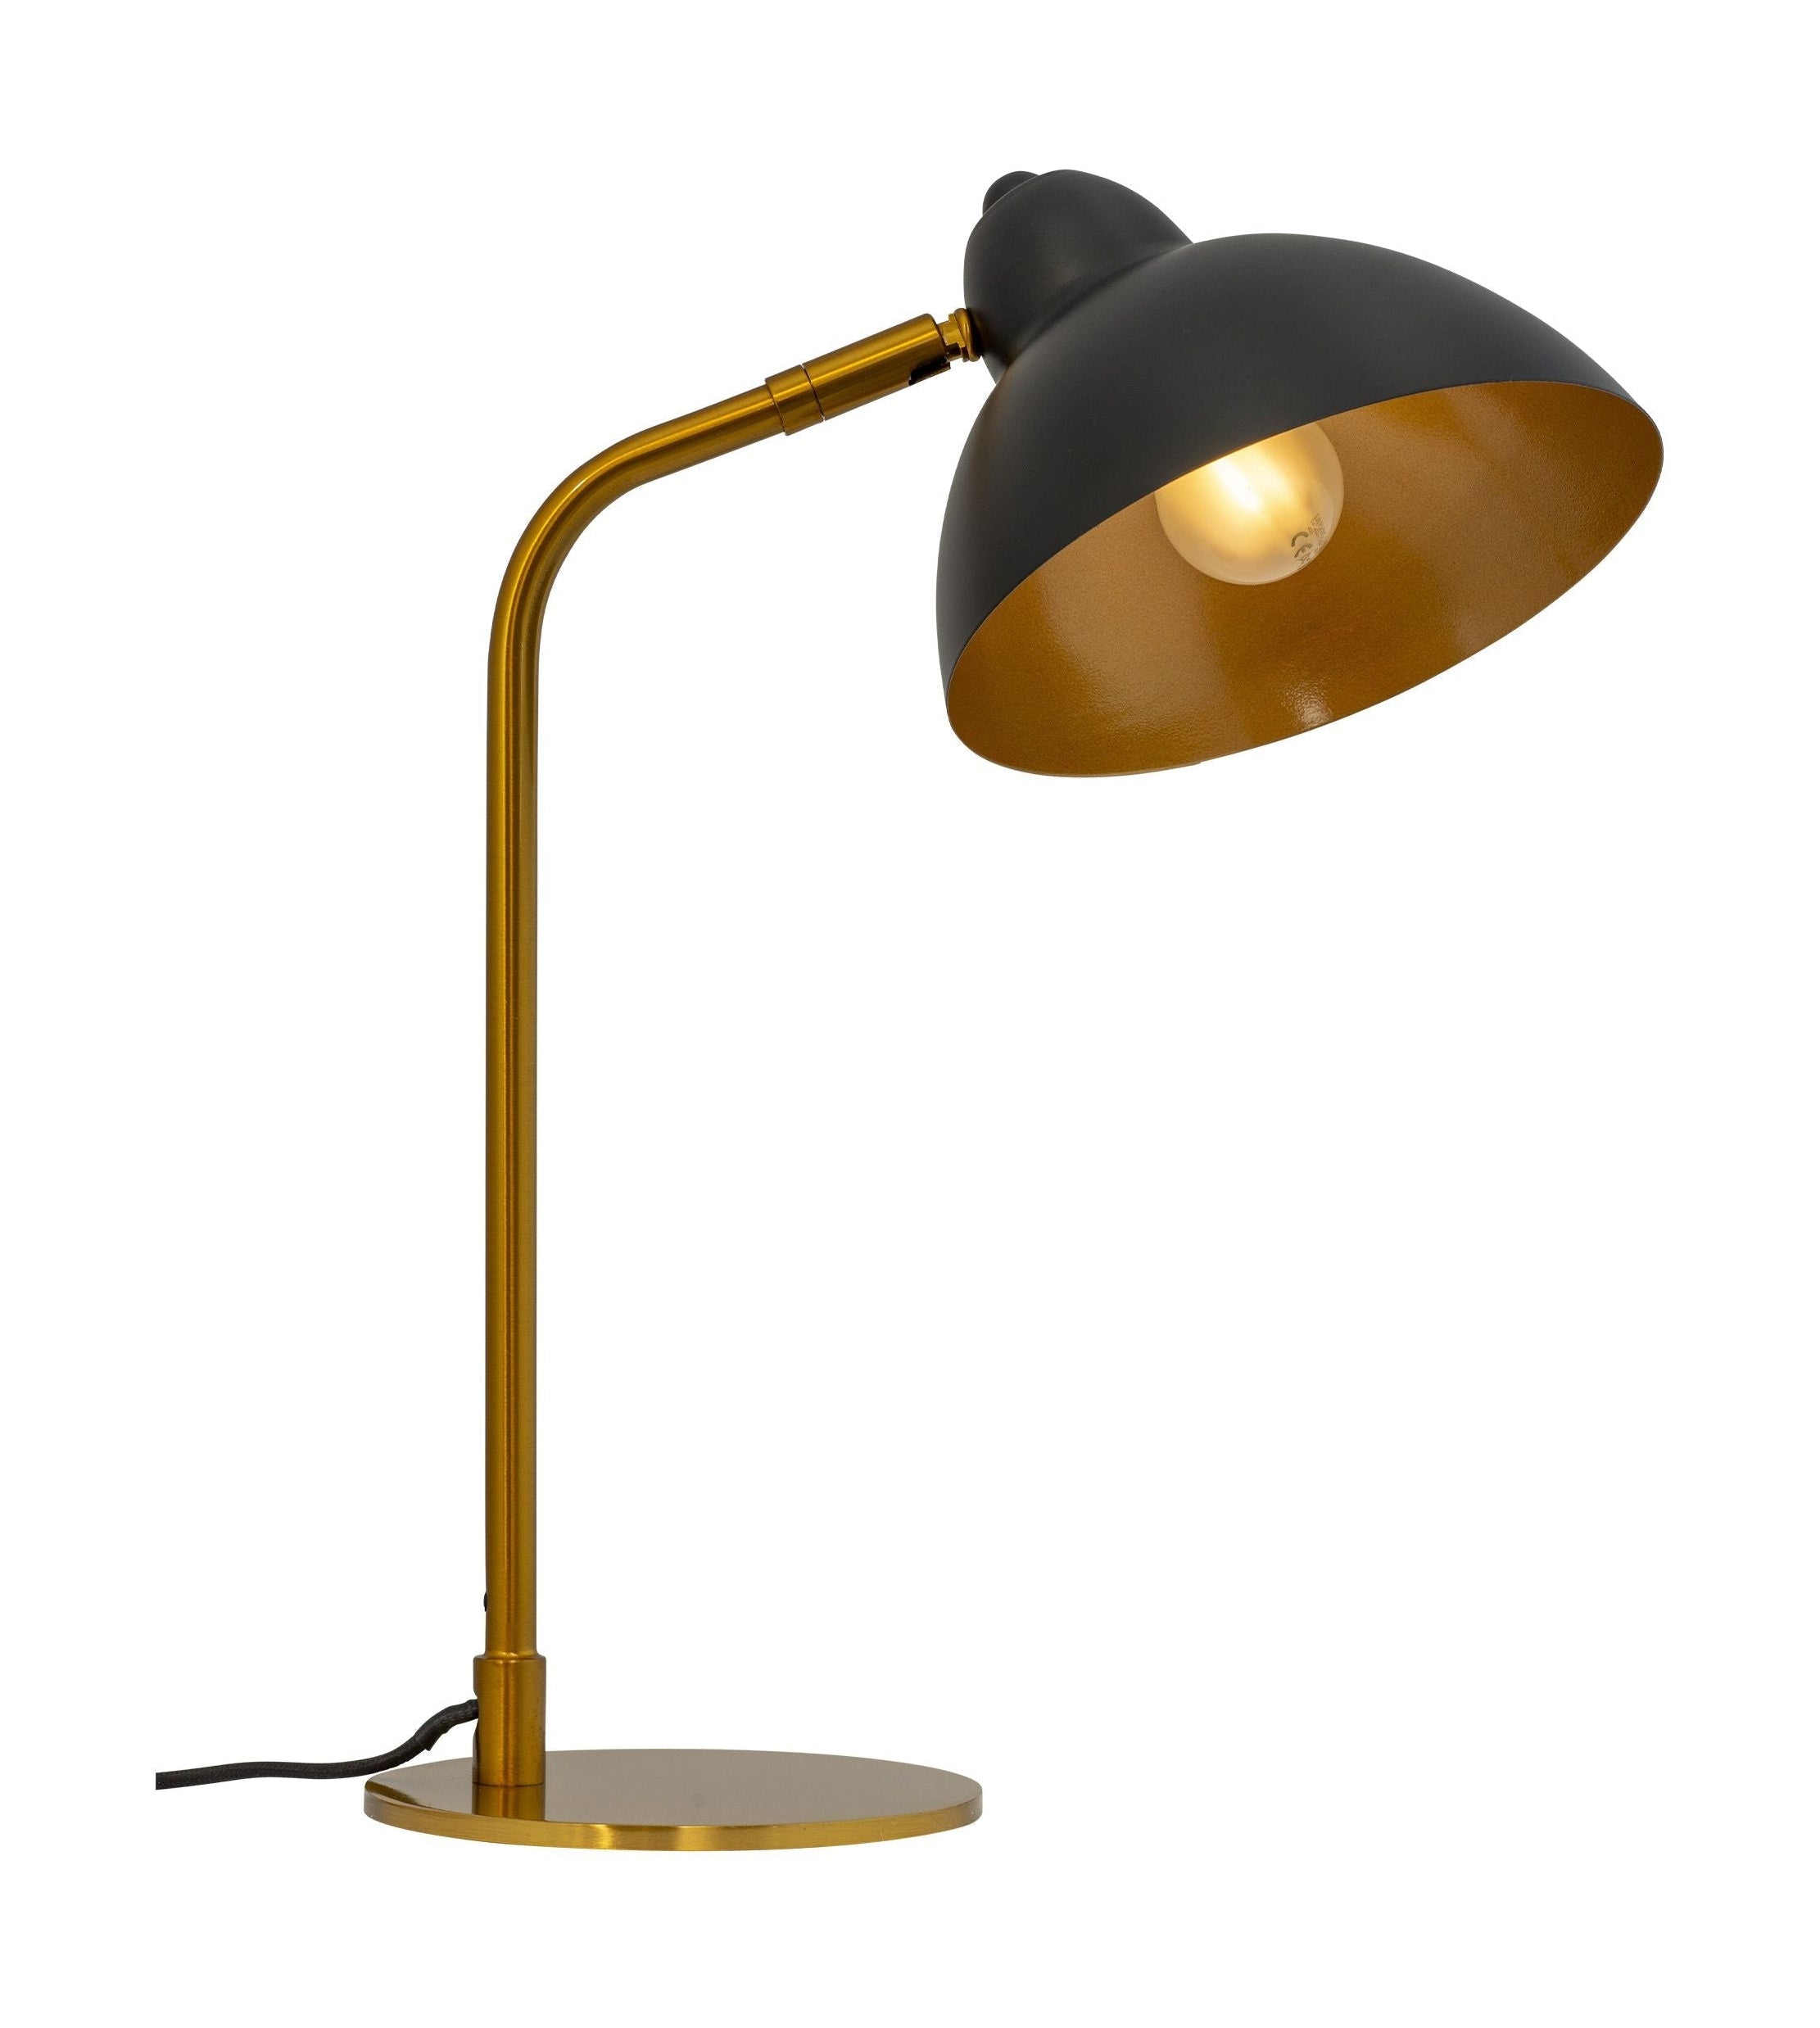 Dyberg Larsen Futura tafellamp messing/zwart, klein